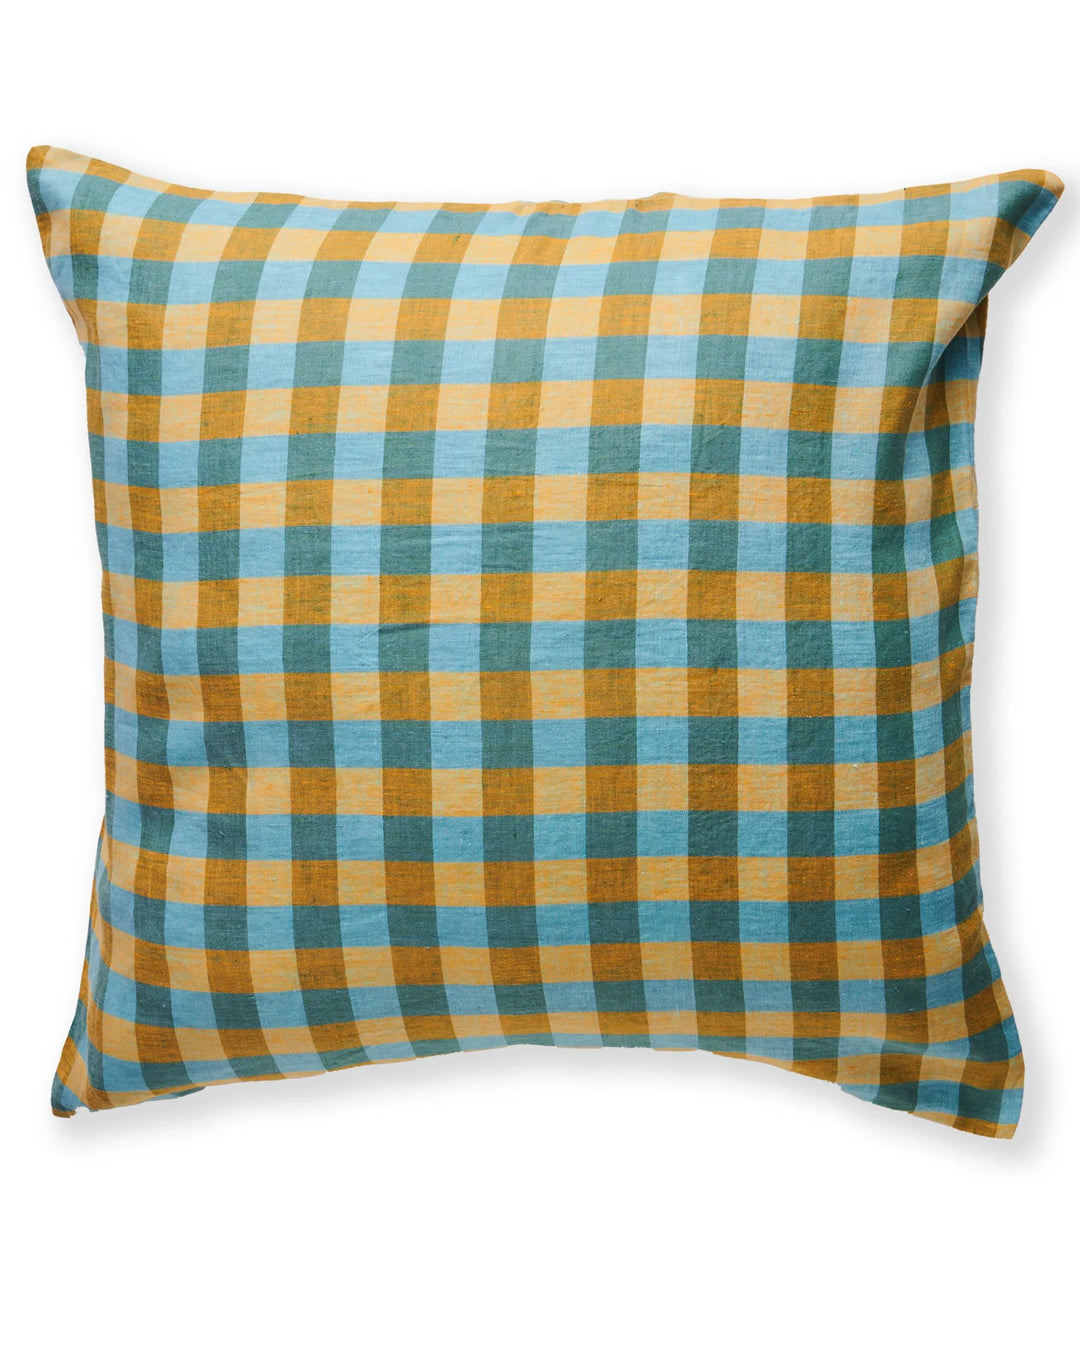 Kip&CO. Marigold Tartan Linen European Pillowcase - 2 pieces